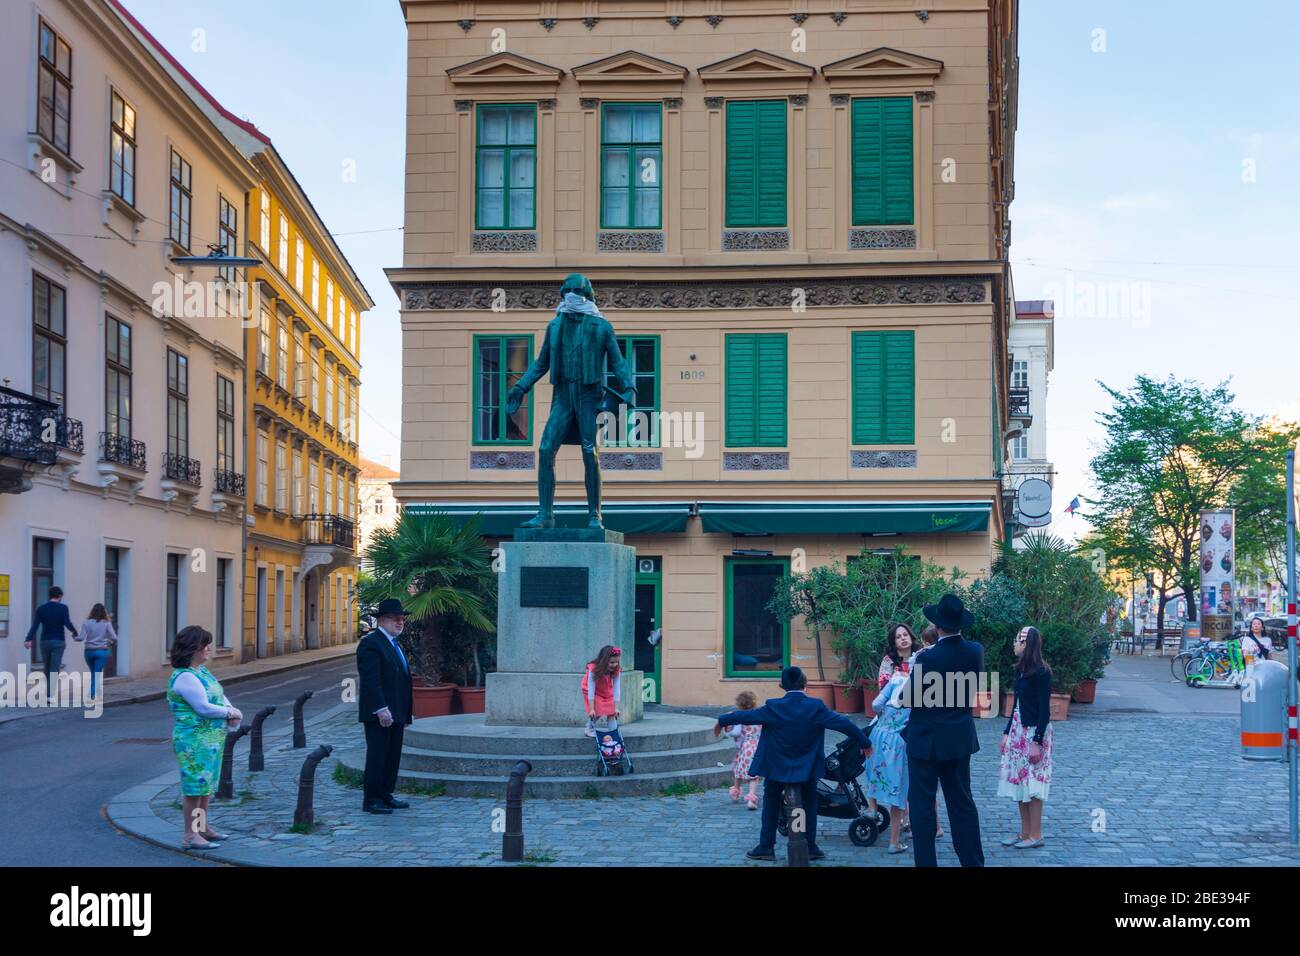 Wien, Vienne: Johann Nestroy Monument, avec masque facial, référence au virus corona (COVID-19), peuple juif, en 02. Leopoldstadt, Wien, Autriche Banque D'Images